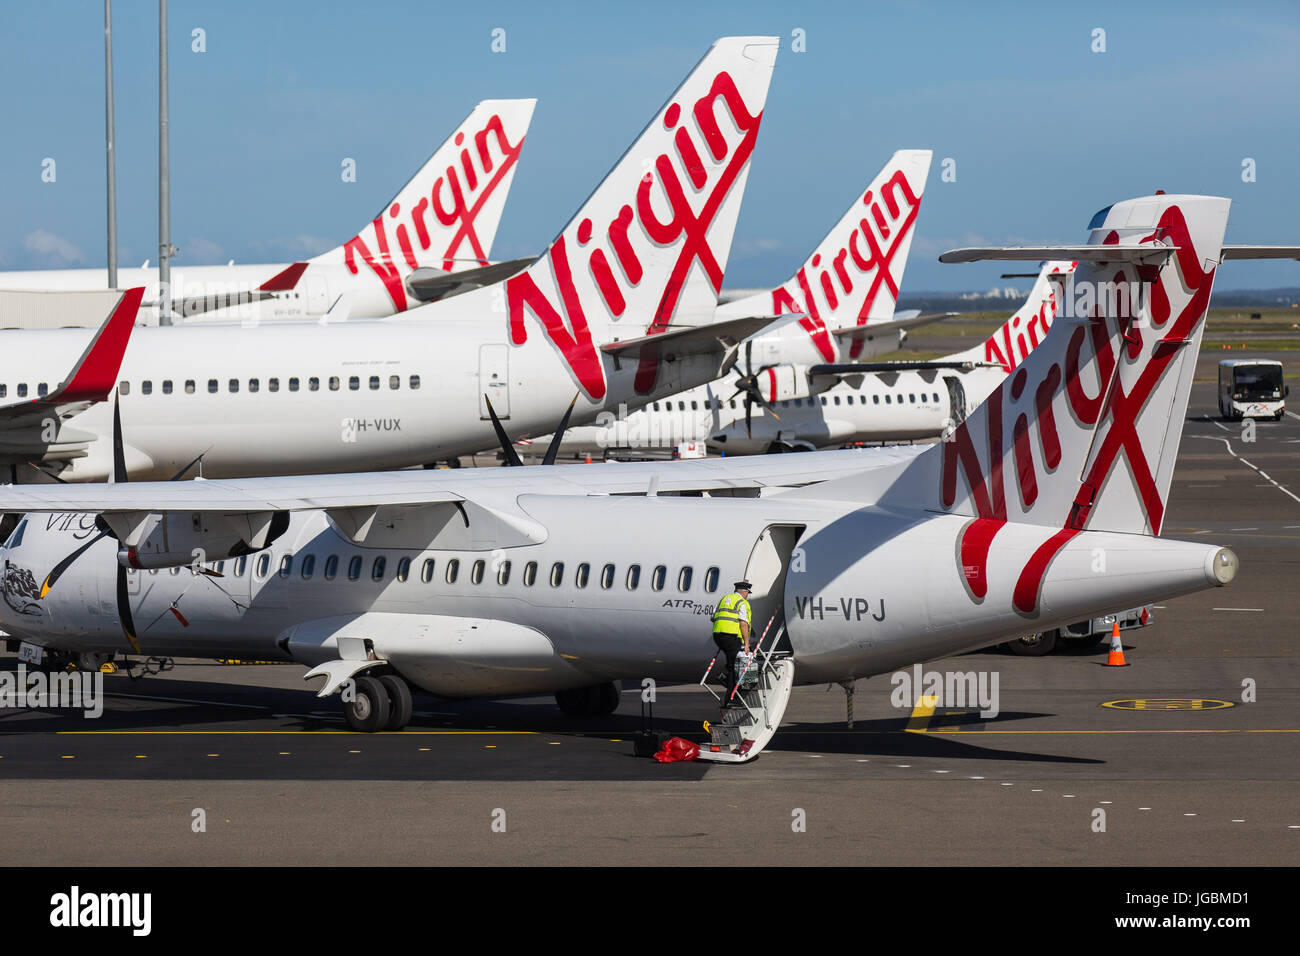 Un groupe d'avions en attente de passagers Australlia vierge à l'aéroport Tullamarine de Melbourne Banque D'Images